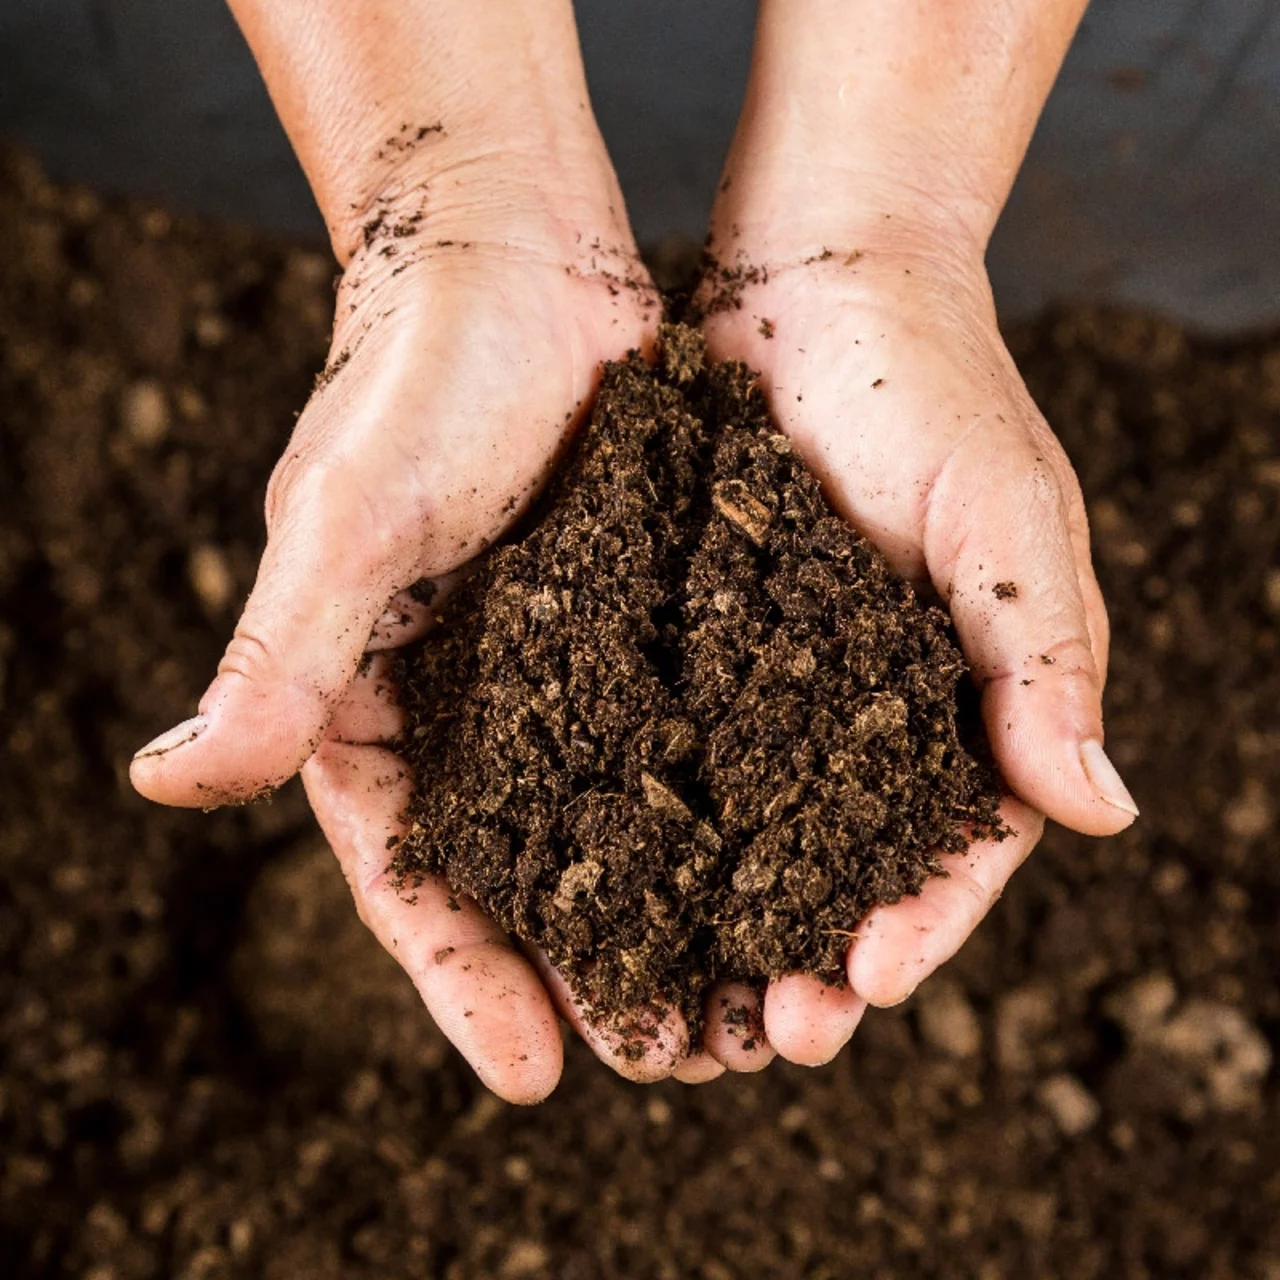 Accélérateur de compost naturel & Bio – Compostage rapide